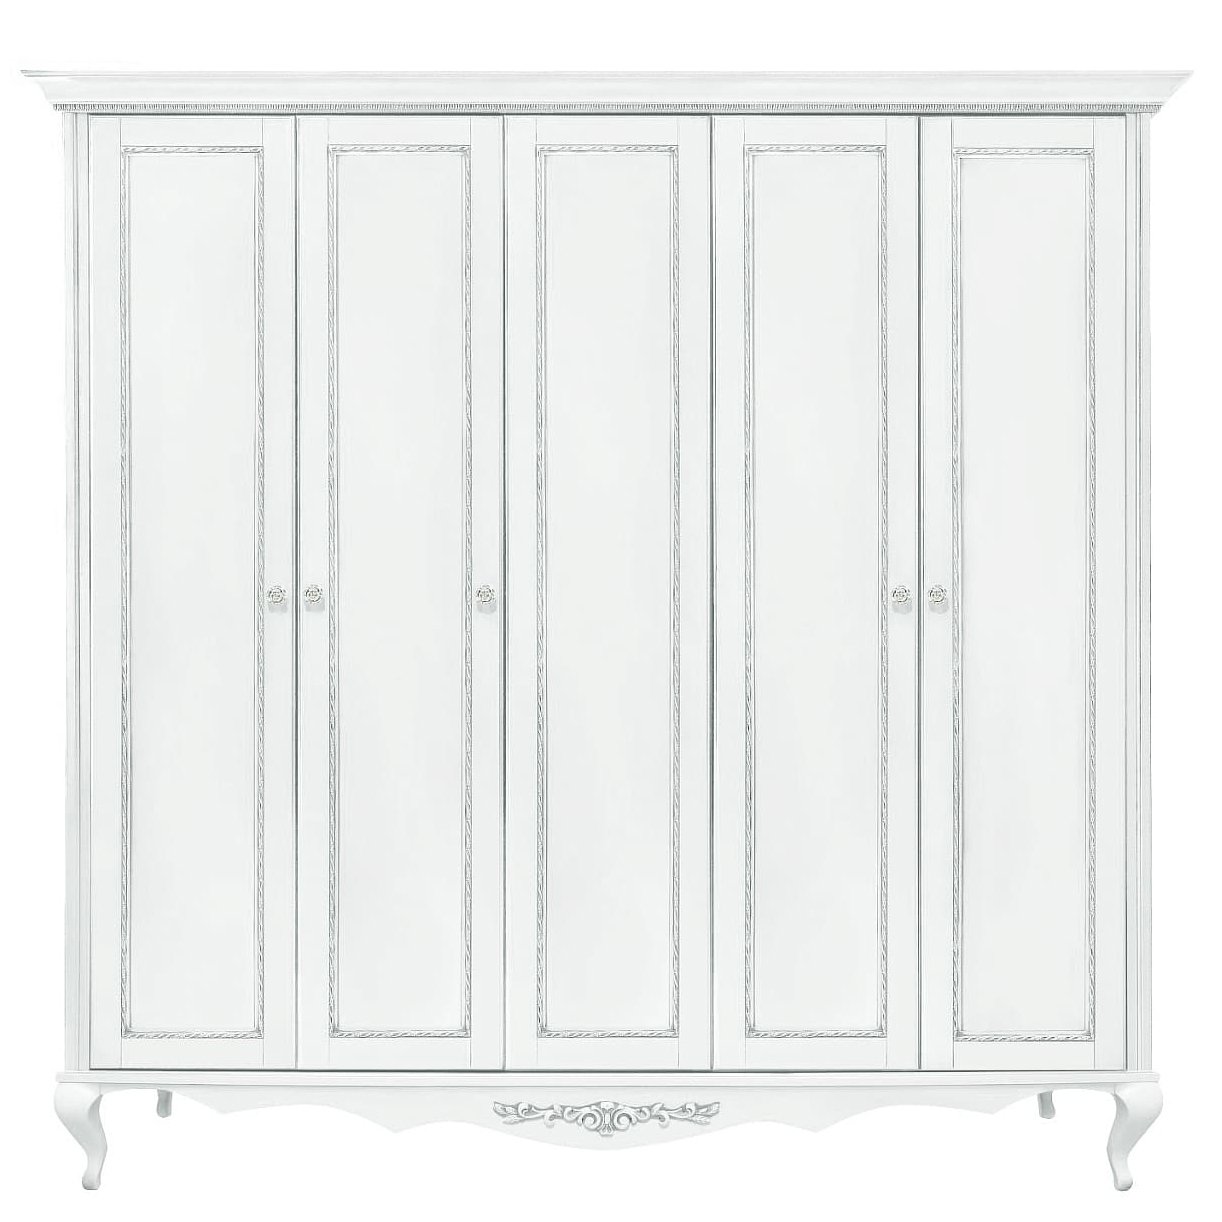 Шкаф платяной Timber Неаполь, 5-ти дверный 249x65x227 см цвет: белый с серебром (T-525Д)T-525Д